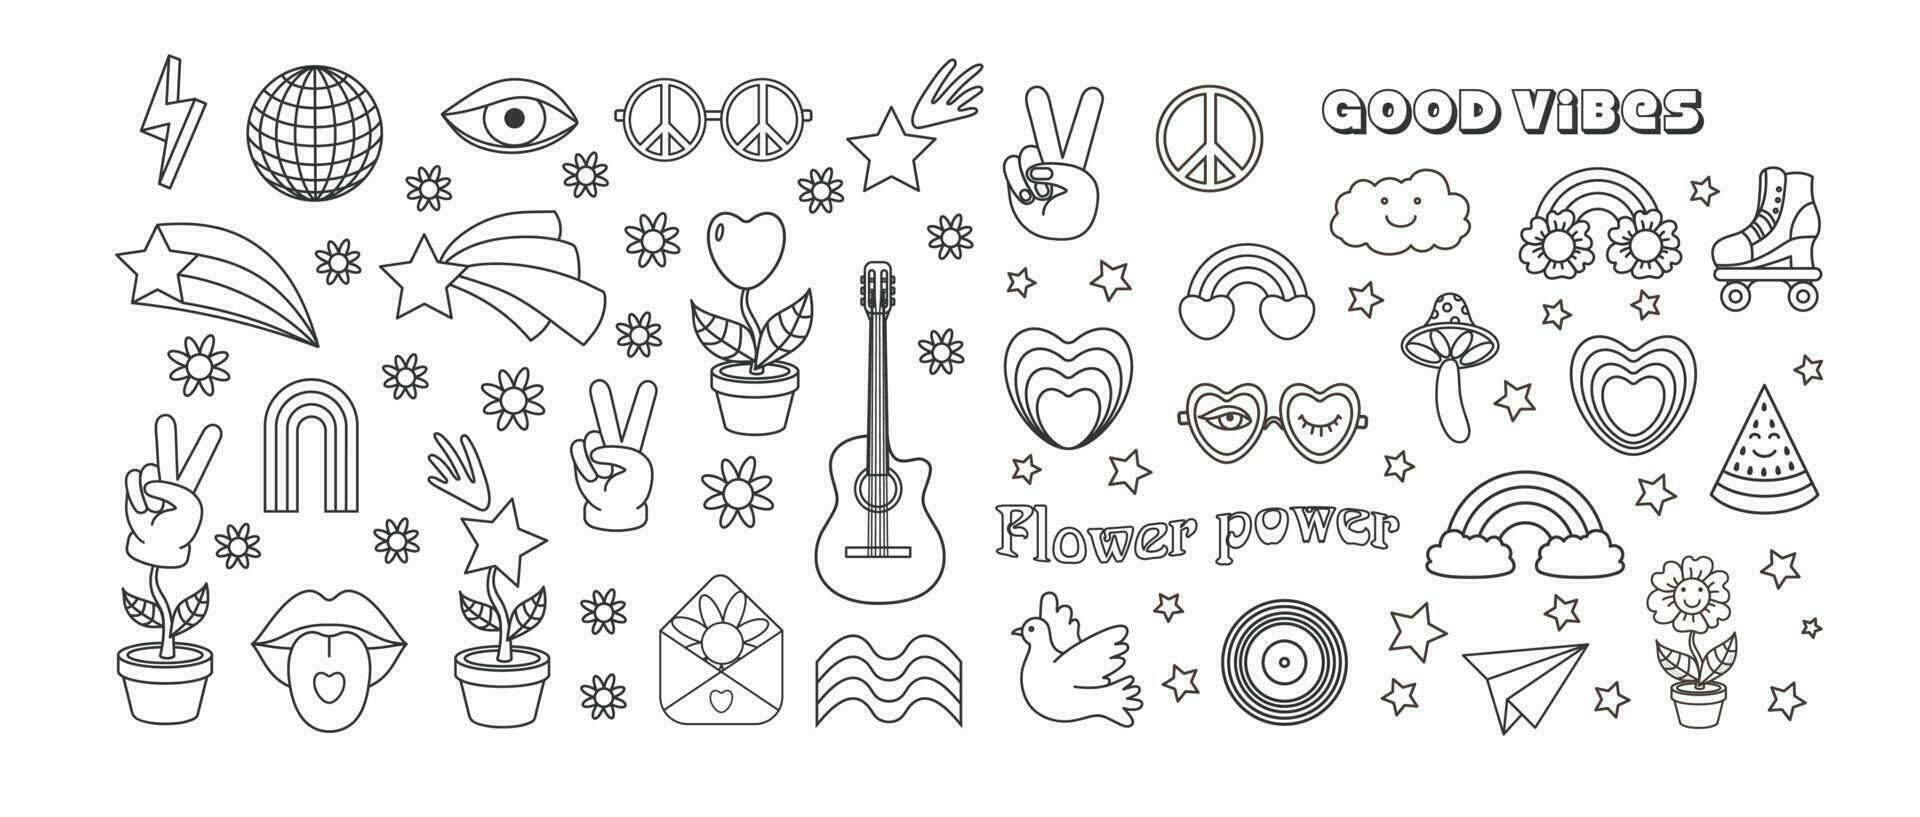 Gliederung Frieden, Liebe, Regenbogen, Disko Ball, Sonnenbrille, Mund, Gitarre Symbol usw. isoliert Vektor Illustration. groovig Hippie 70er Jahre Satz.